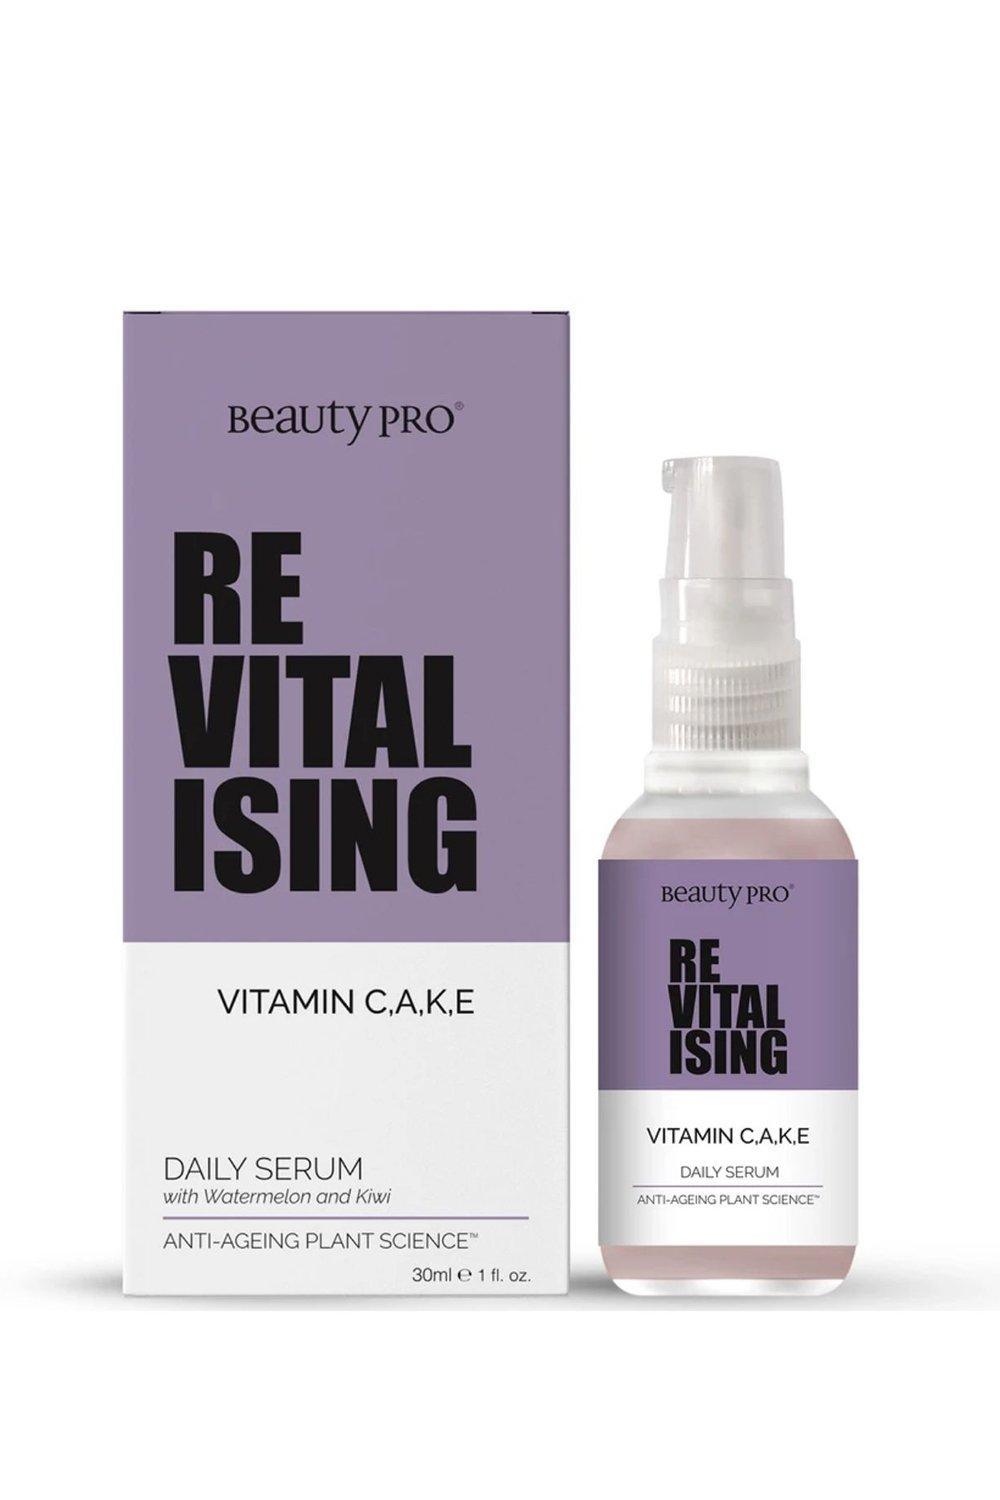 beautypro revitalising vitamin cake 30ml daily serum